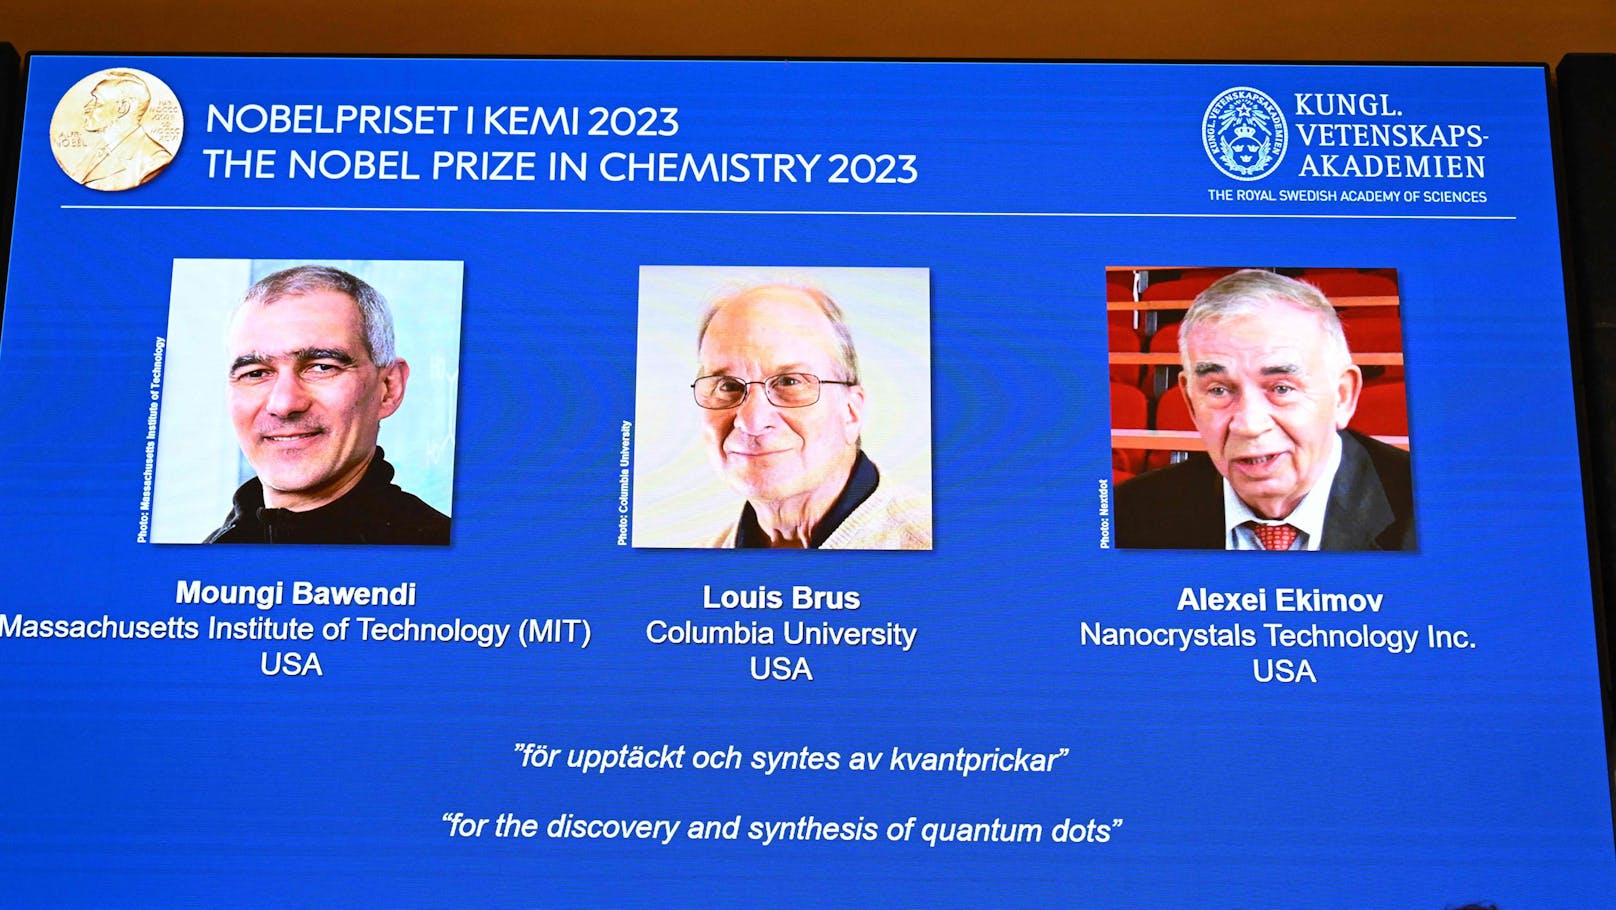 Peinliche Panne bei Bekanntgabe von Chemie-Nobelpreis